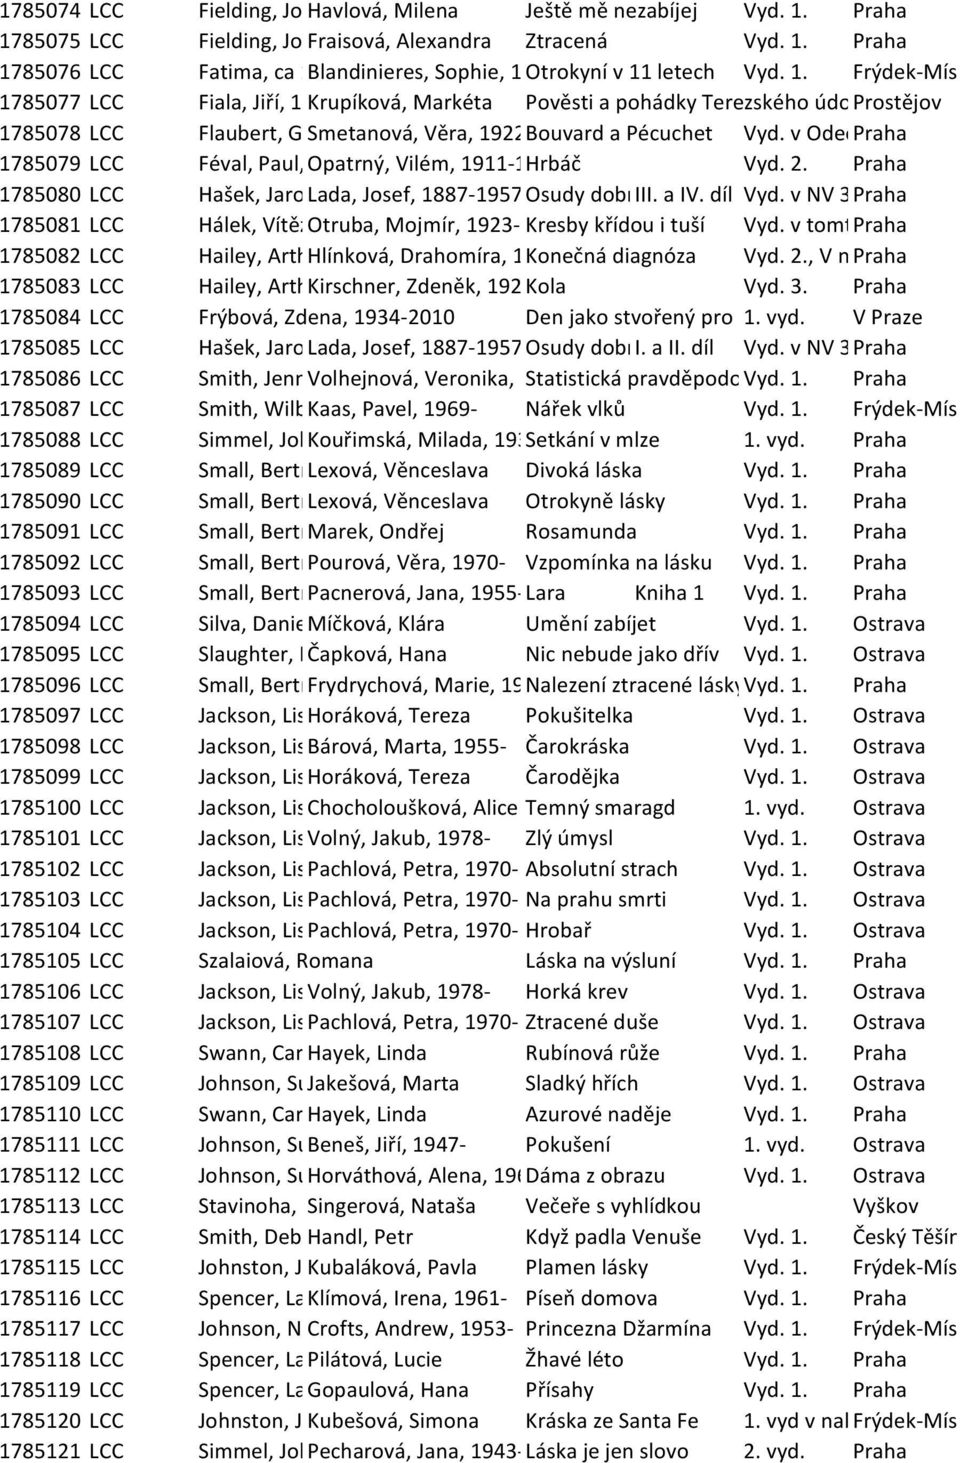 Vyd. v Odeonu Praha 2. 1785079 LCC Féval, Paul, Opatrný, 1816-1887 Vilém, 1911-1972 Hrbáč Vyd. 2. Praha 1785080 LCC Hašek, Jaroslav, Lada, 1883-1923 Josef, 1887-1957 Osudy dobrého III. a vojáka IV.